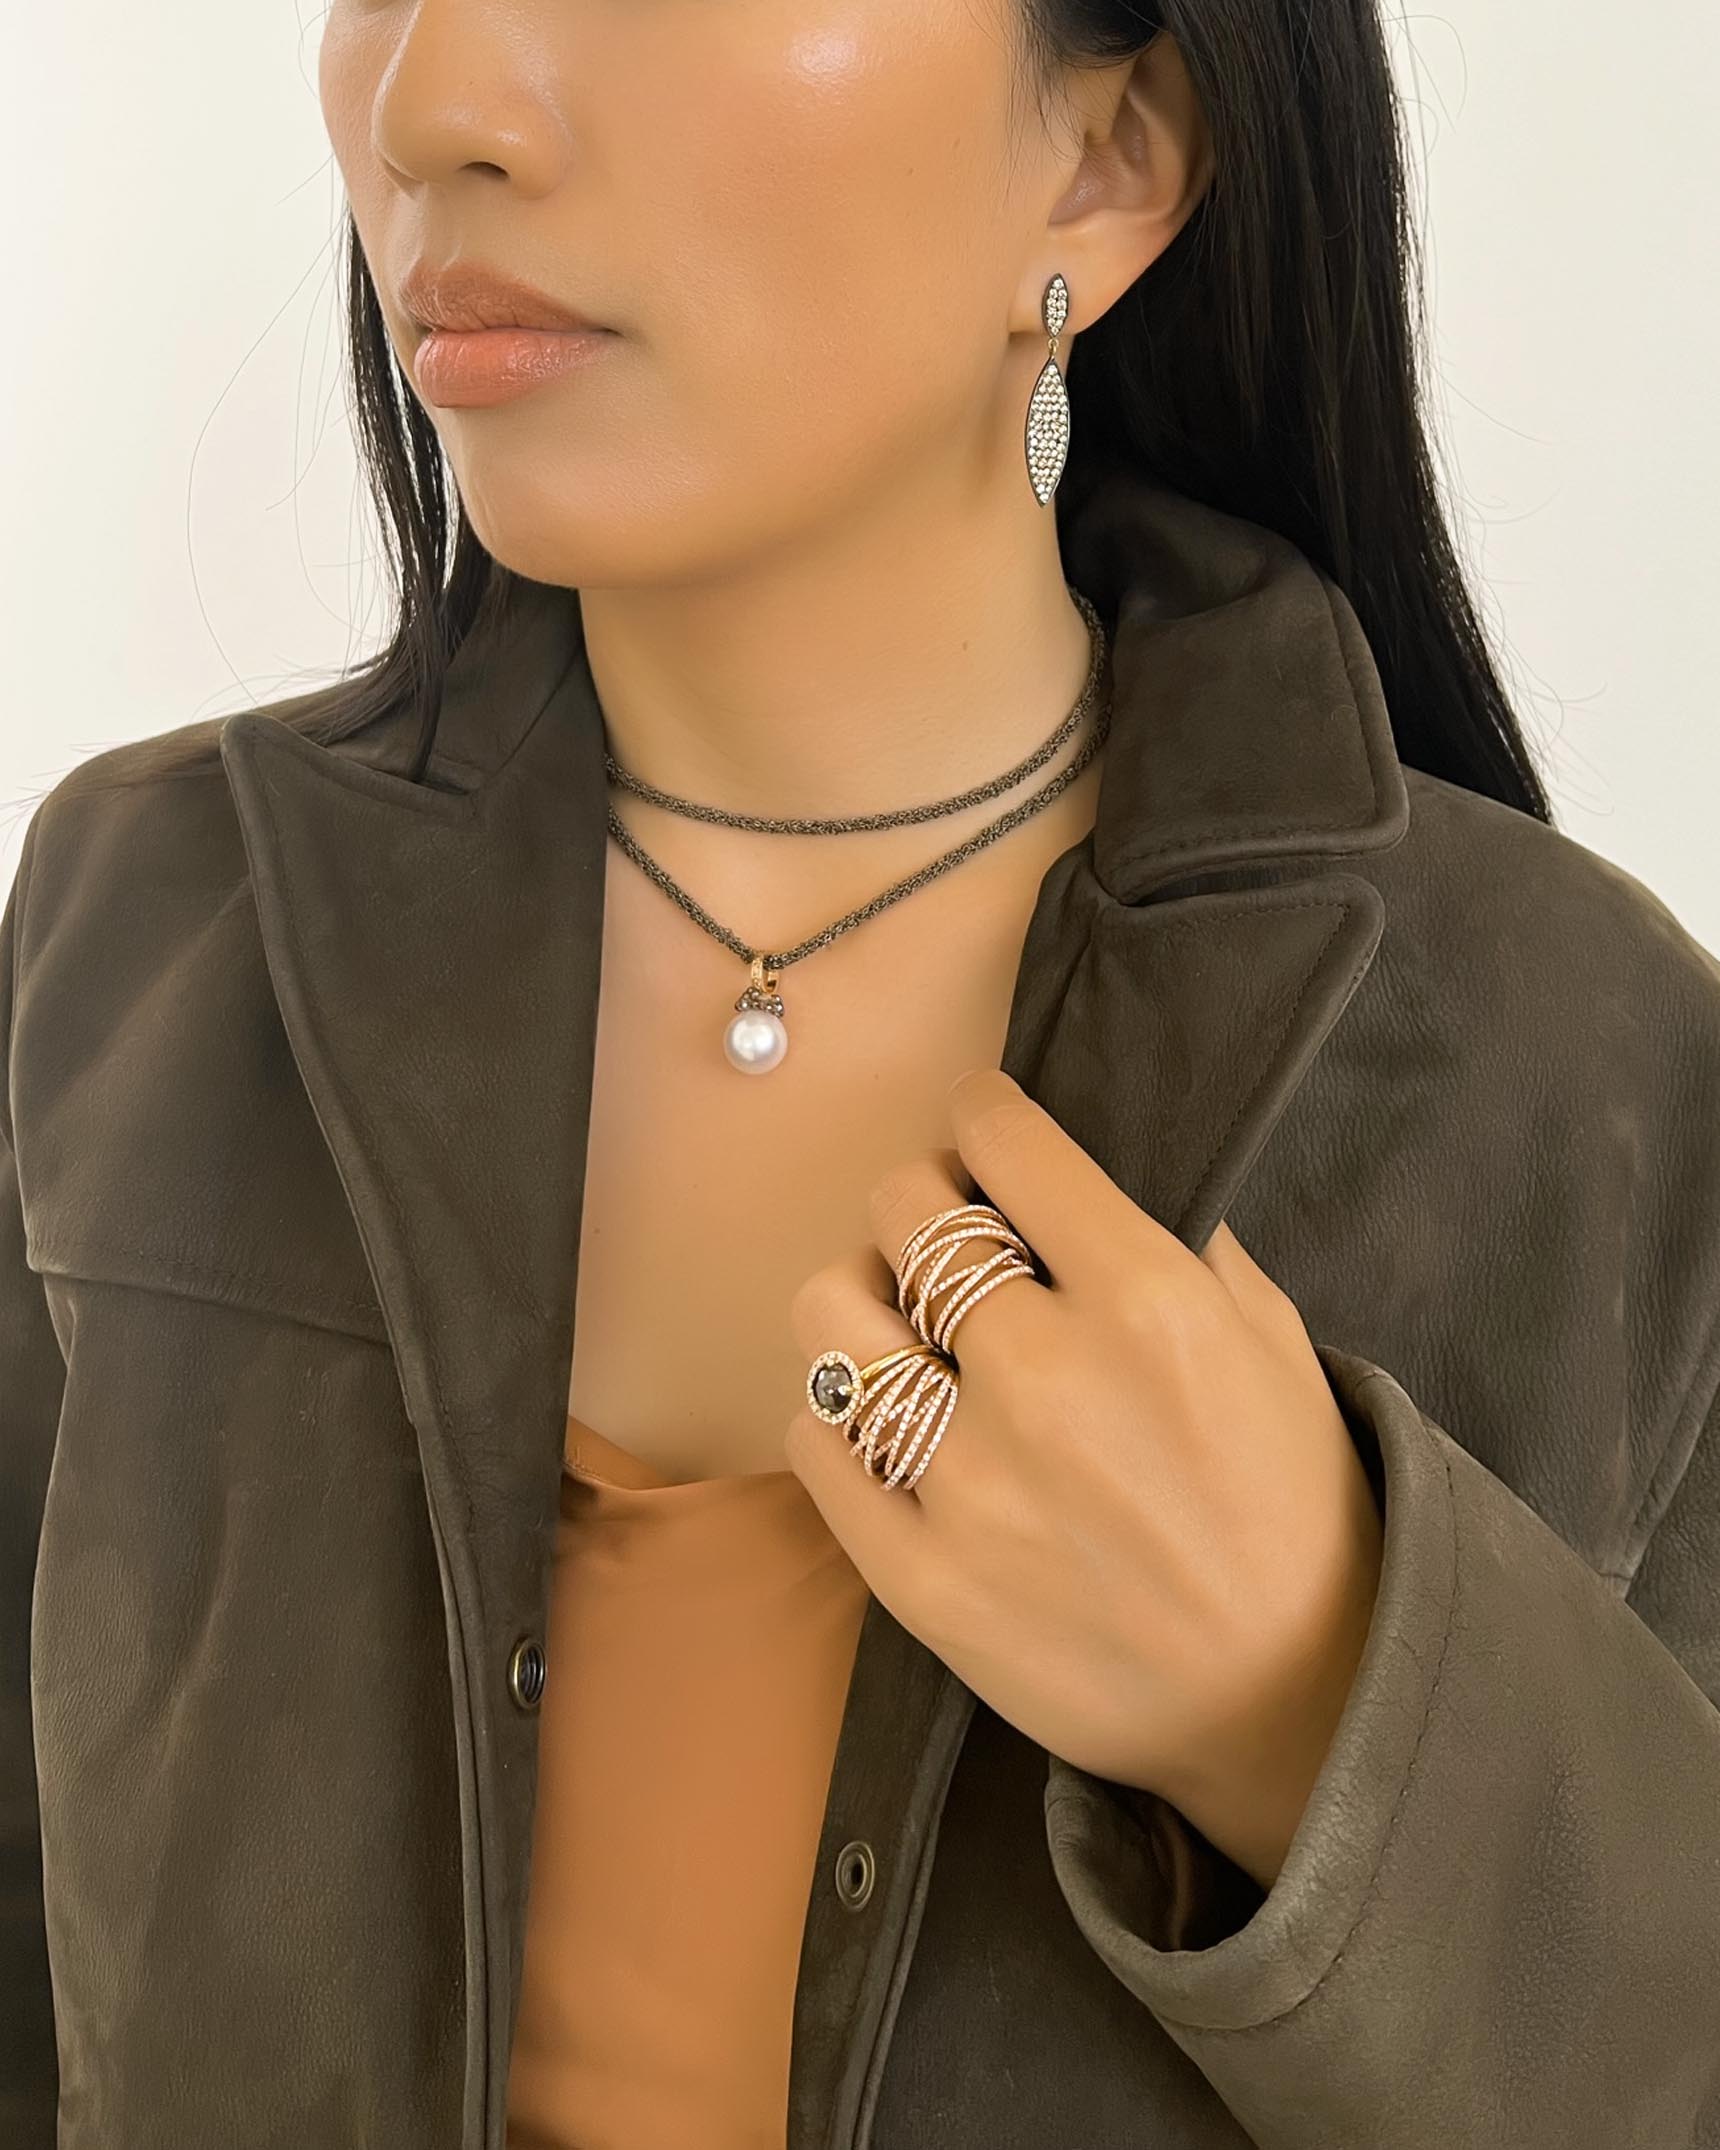 Brown_Pearl and White Diamond Earrings_Necklace and Rings EDFTK03677 – PRLDP00794 – RFDG03855 – RFDG03873 – RFDG03613